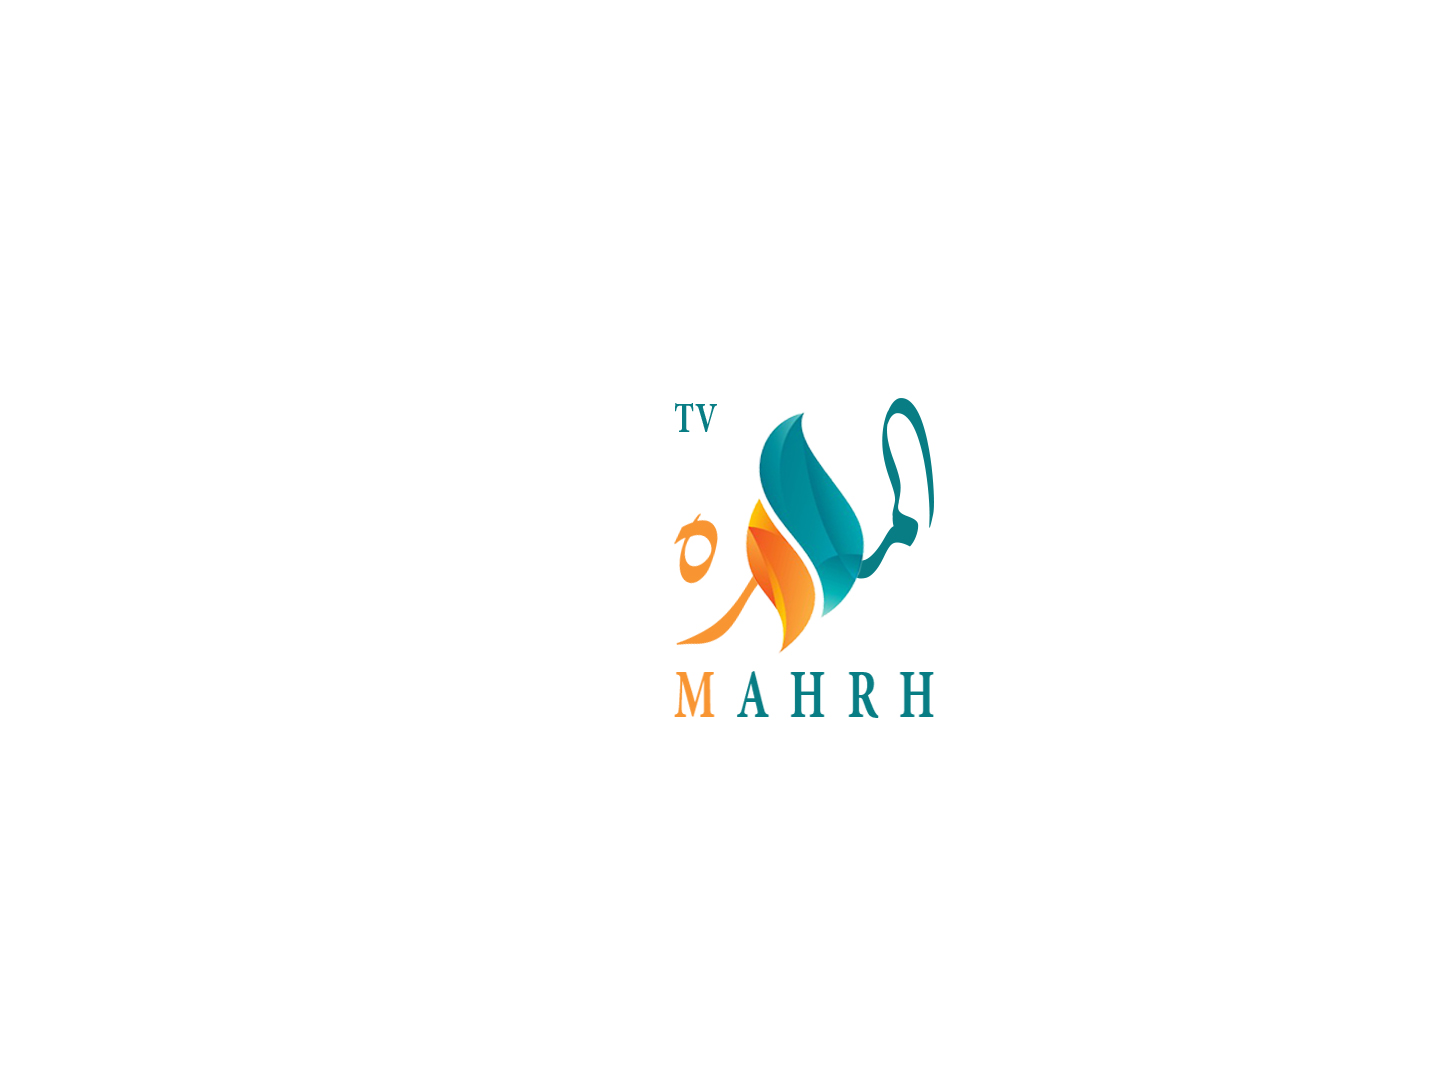 MAHRH TV